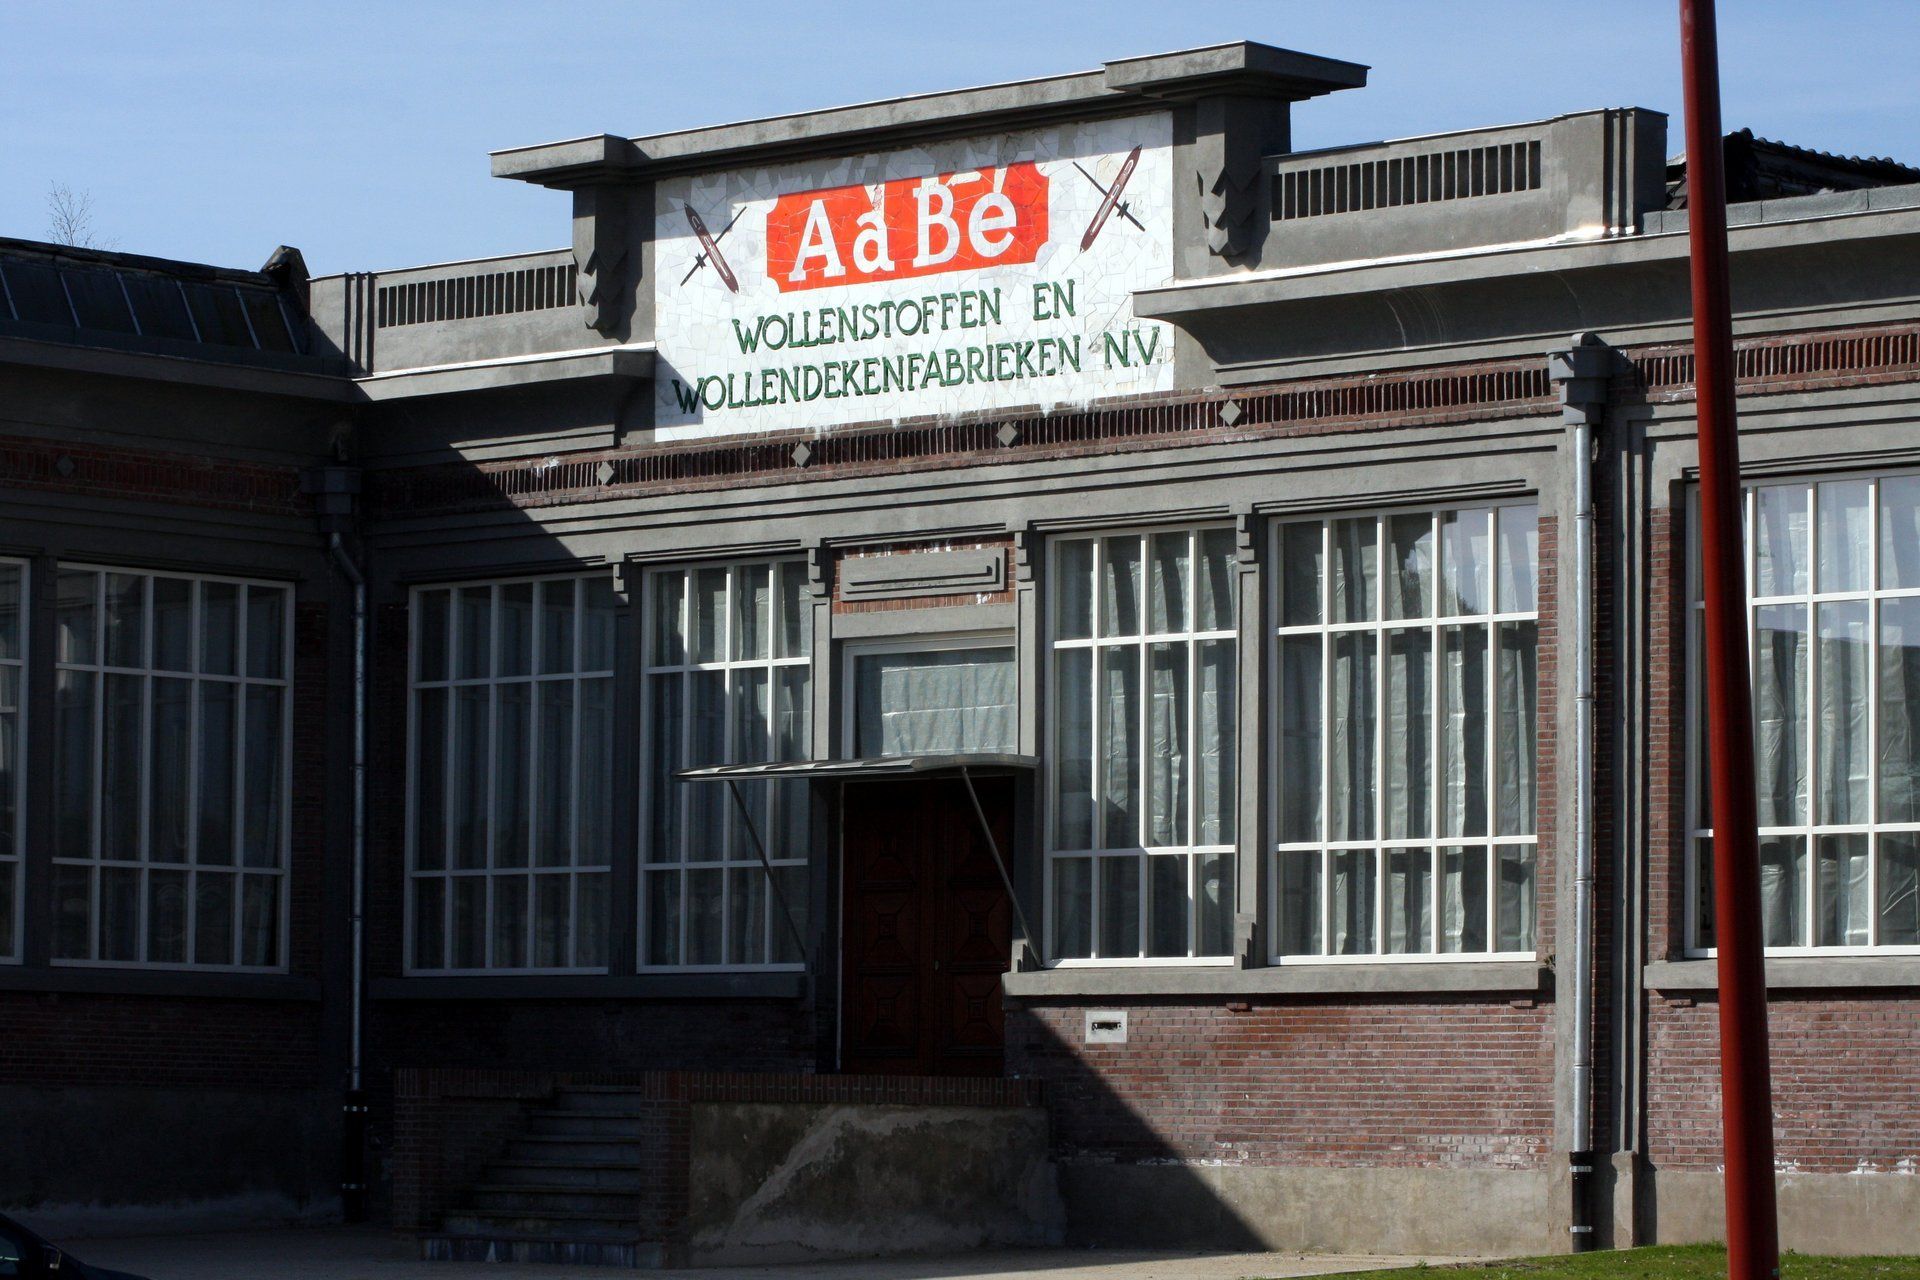 Aabe wollenstoffenfabriek, Tilburg,  afbraak, sloop